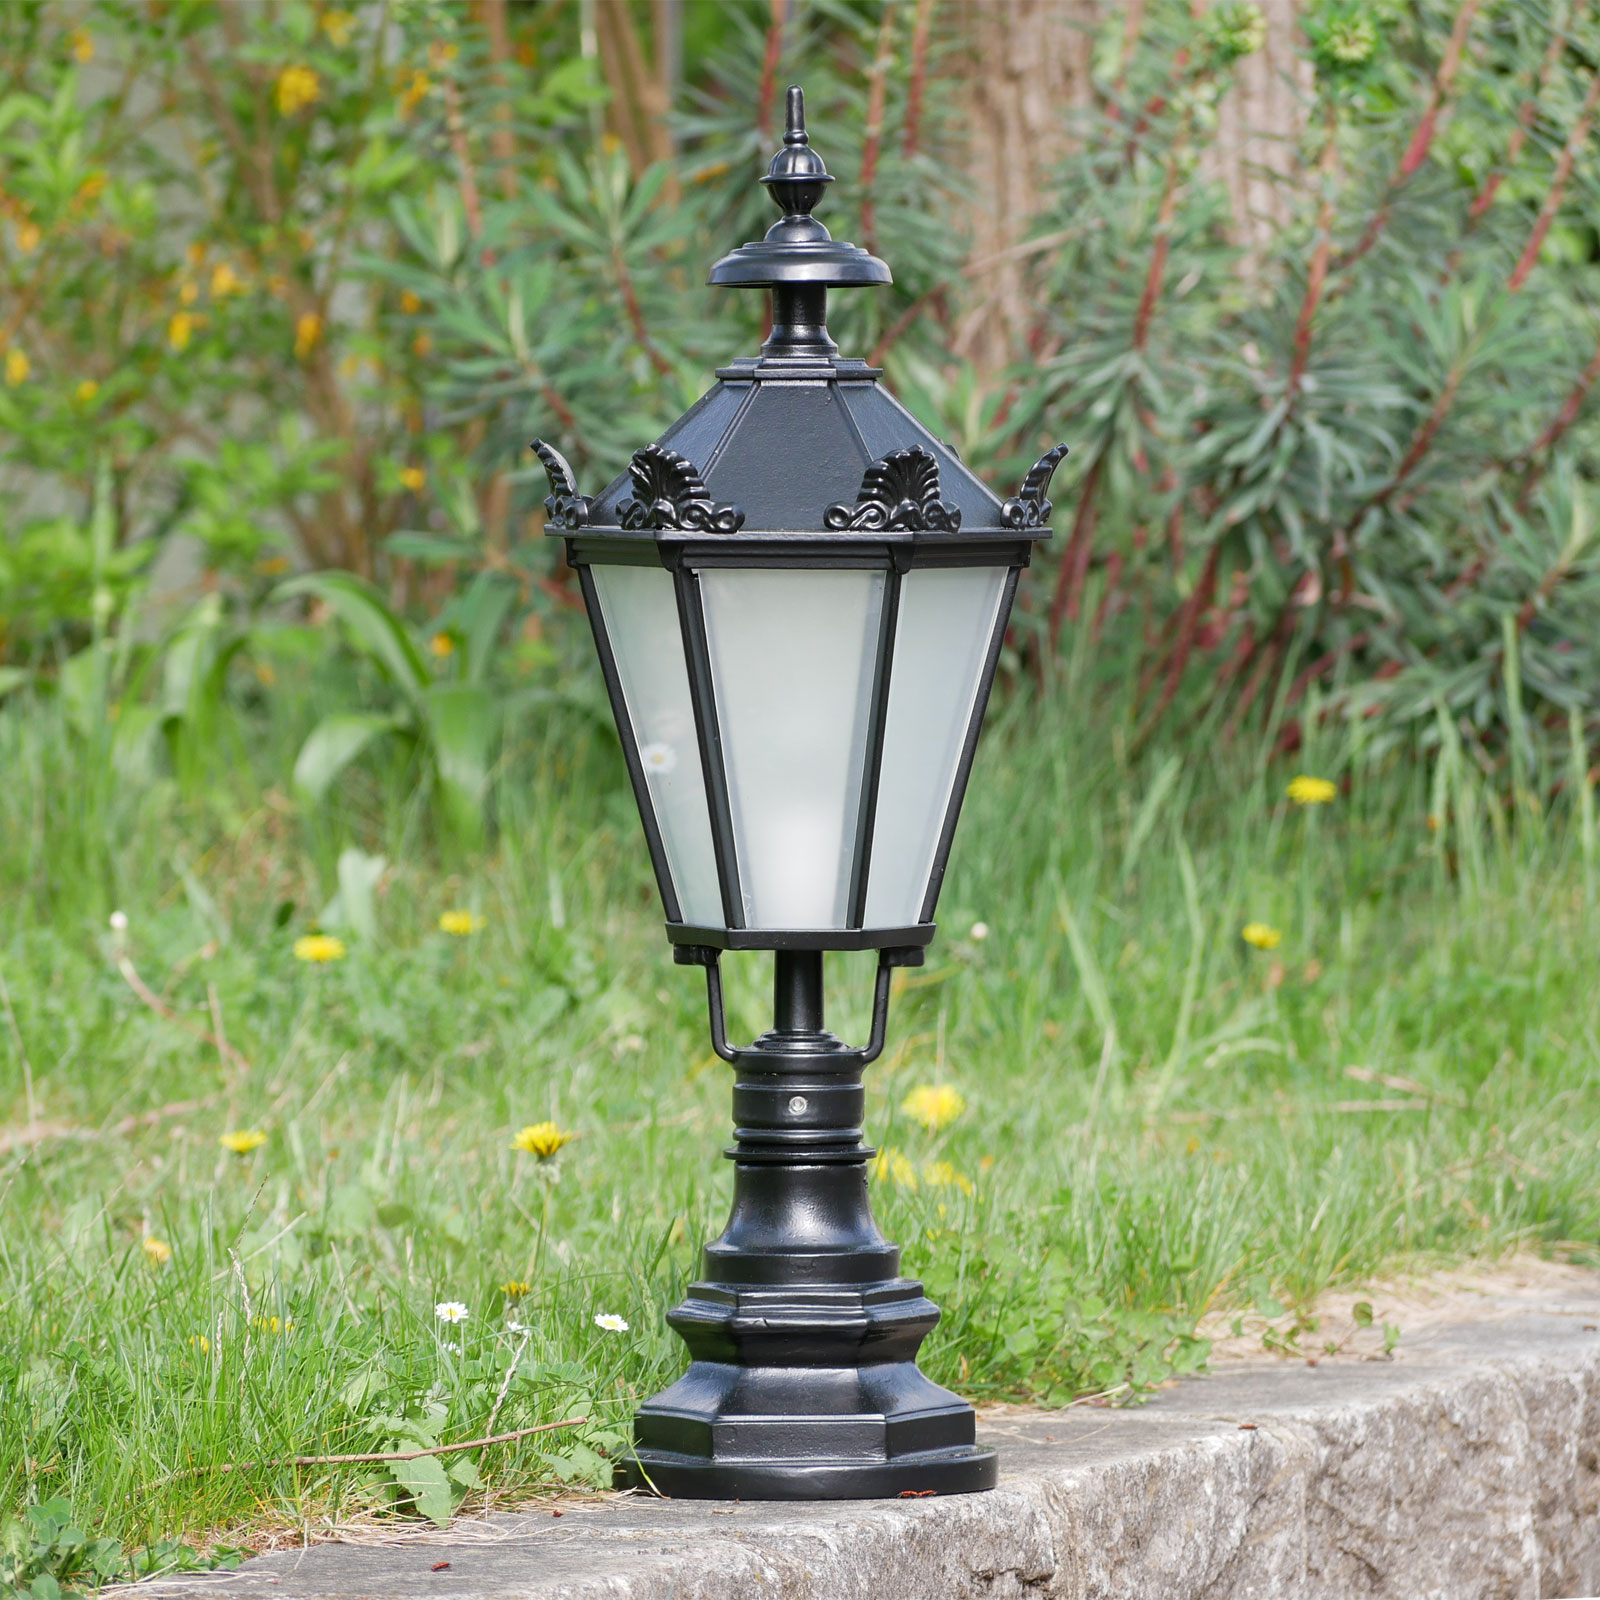 Pedestal Light Cypr with Lantern in Schinkel Style: Modell 1 in Tiefschwarz, mattes Glas